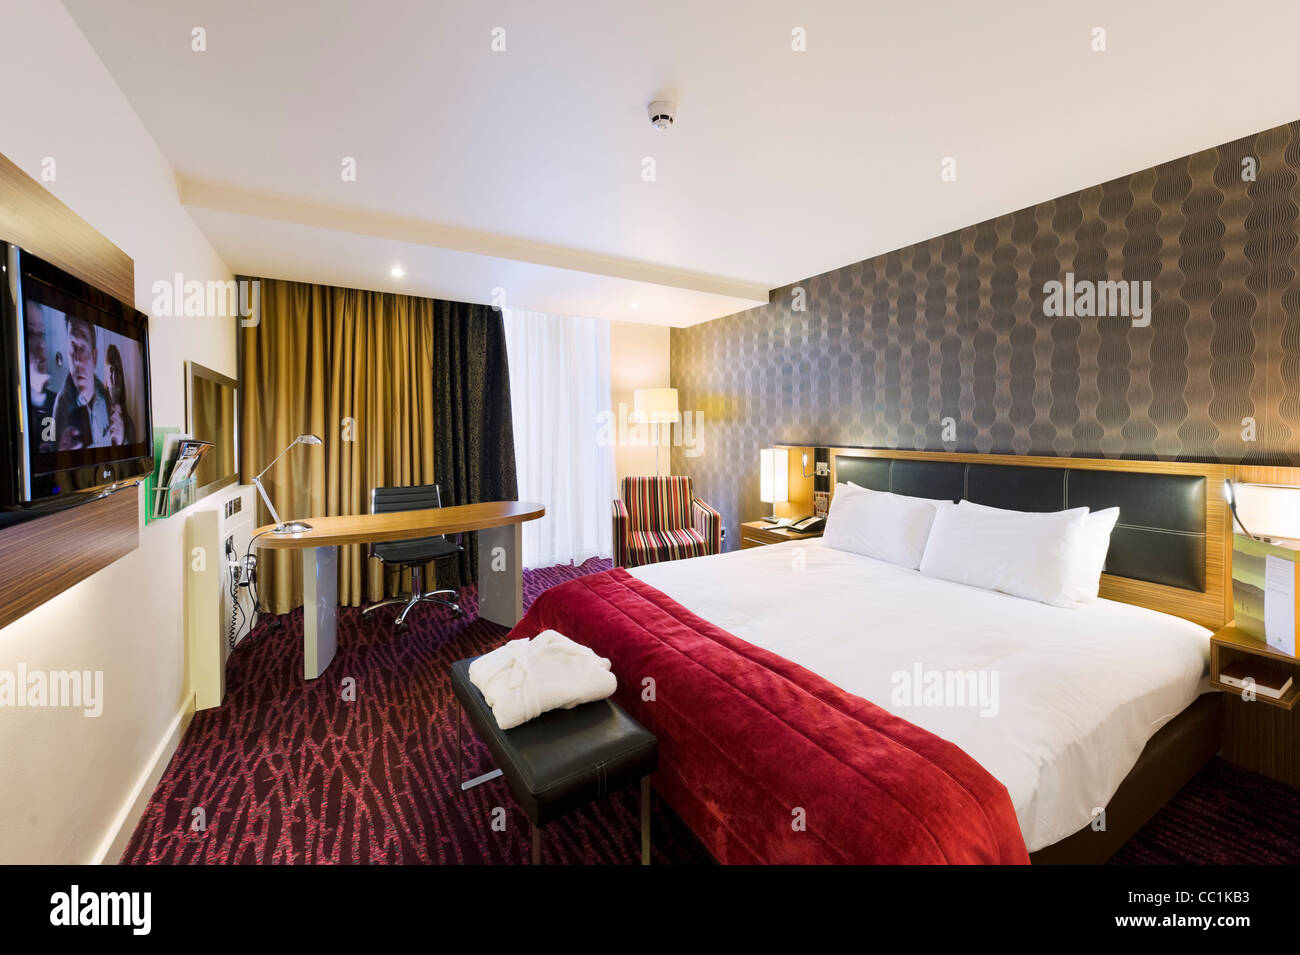 La chambre de l'Holiday Inn, Media City, Salford Quays, Manchester, UK Banque D'Images